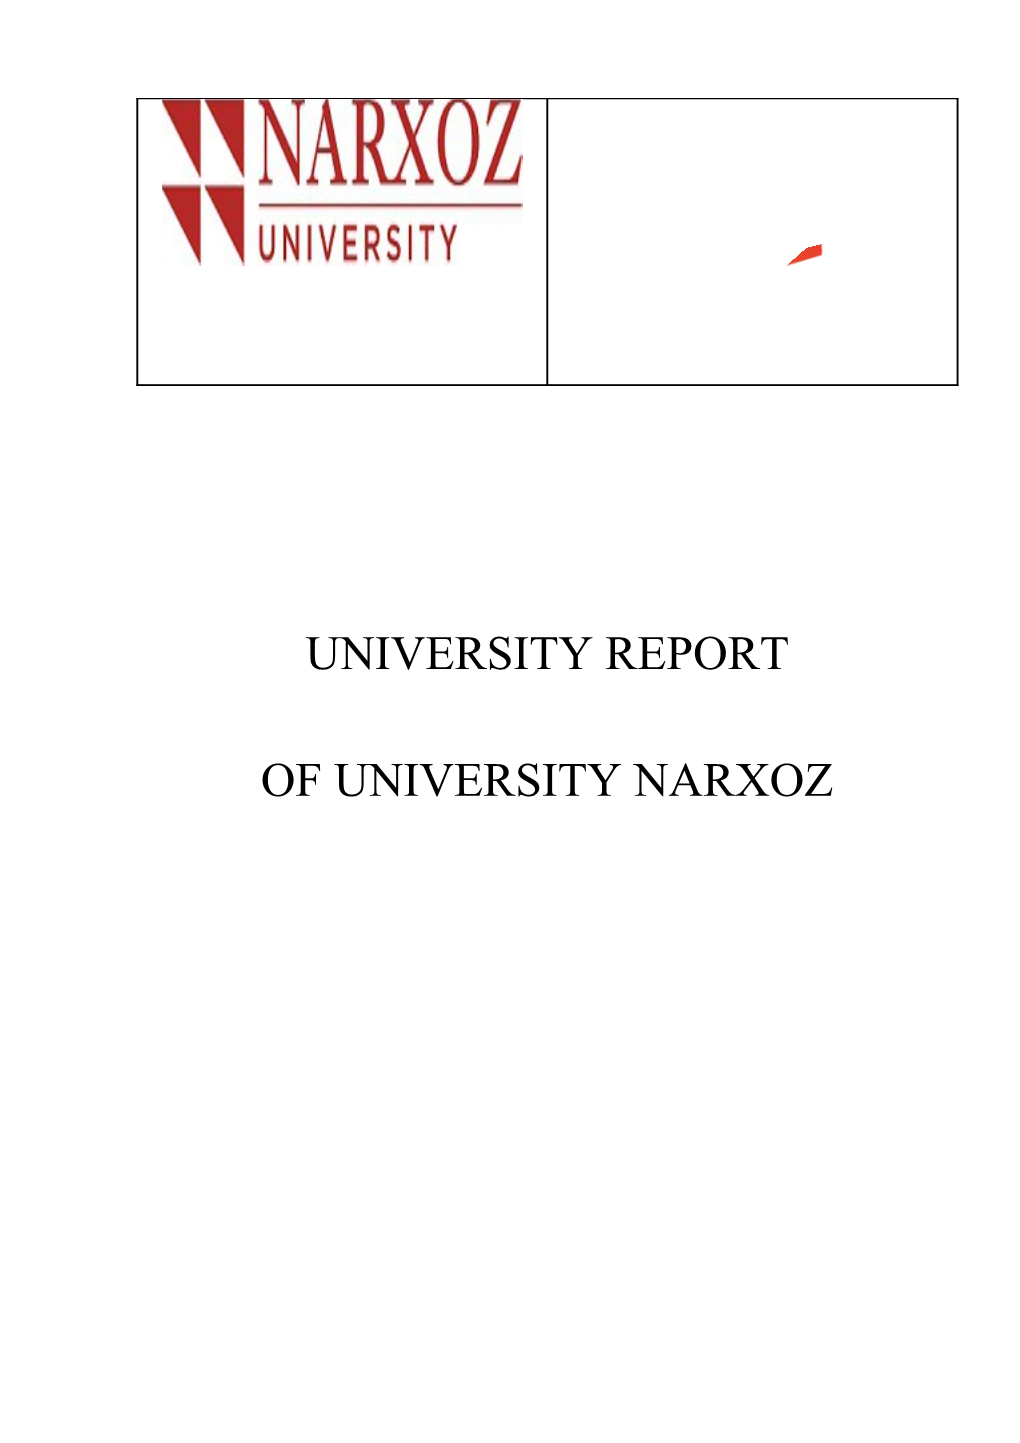 Chapter 1. About Narxoz University